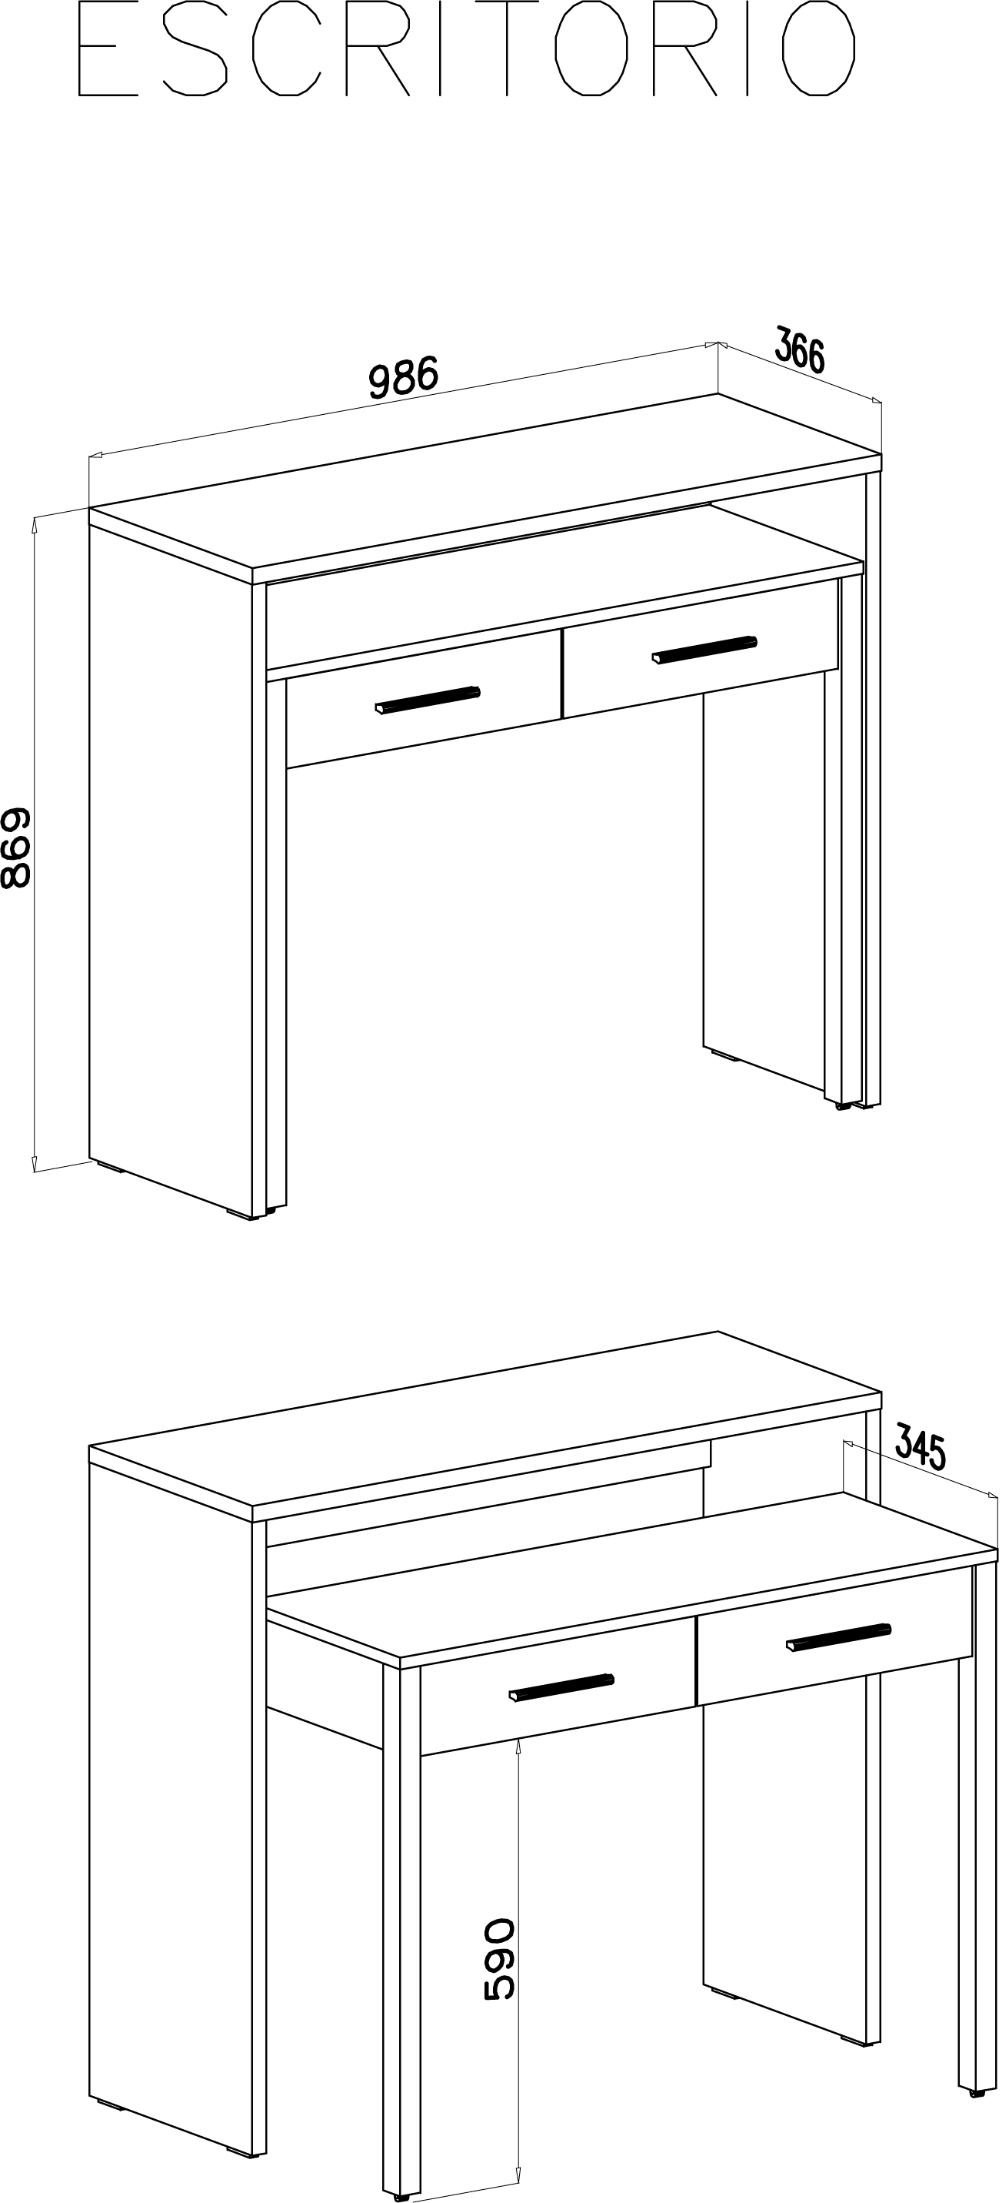 Bureau extensible, table pour ordinateur, 2 tiroirs, blanc.